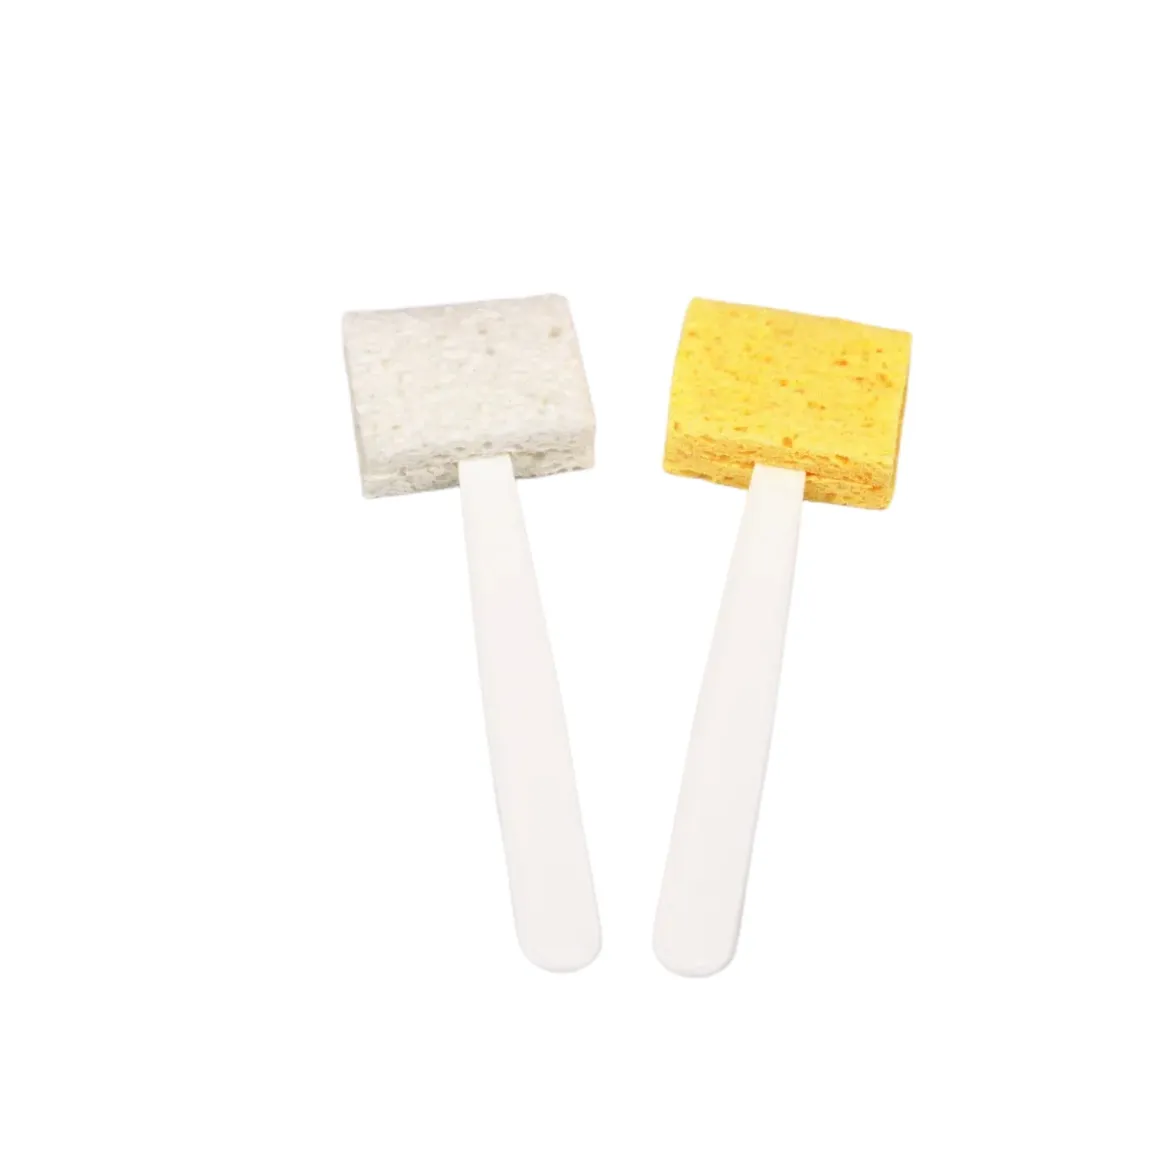 Neuheiten Schnelle bequeme Reinigung Geschirr pfannen Schwamm wäscher, einfach zu bedienen Clean Cellulose Sponge Stick